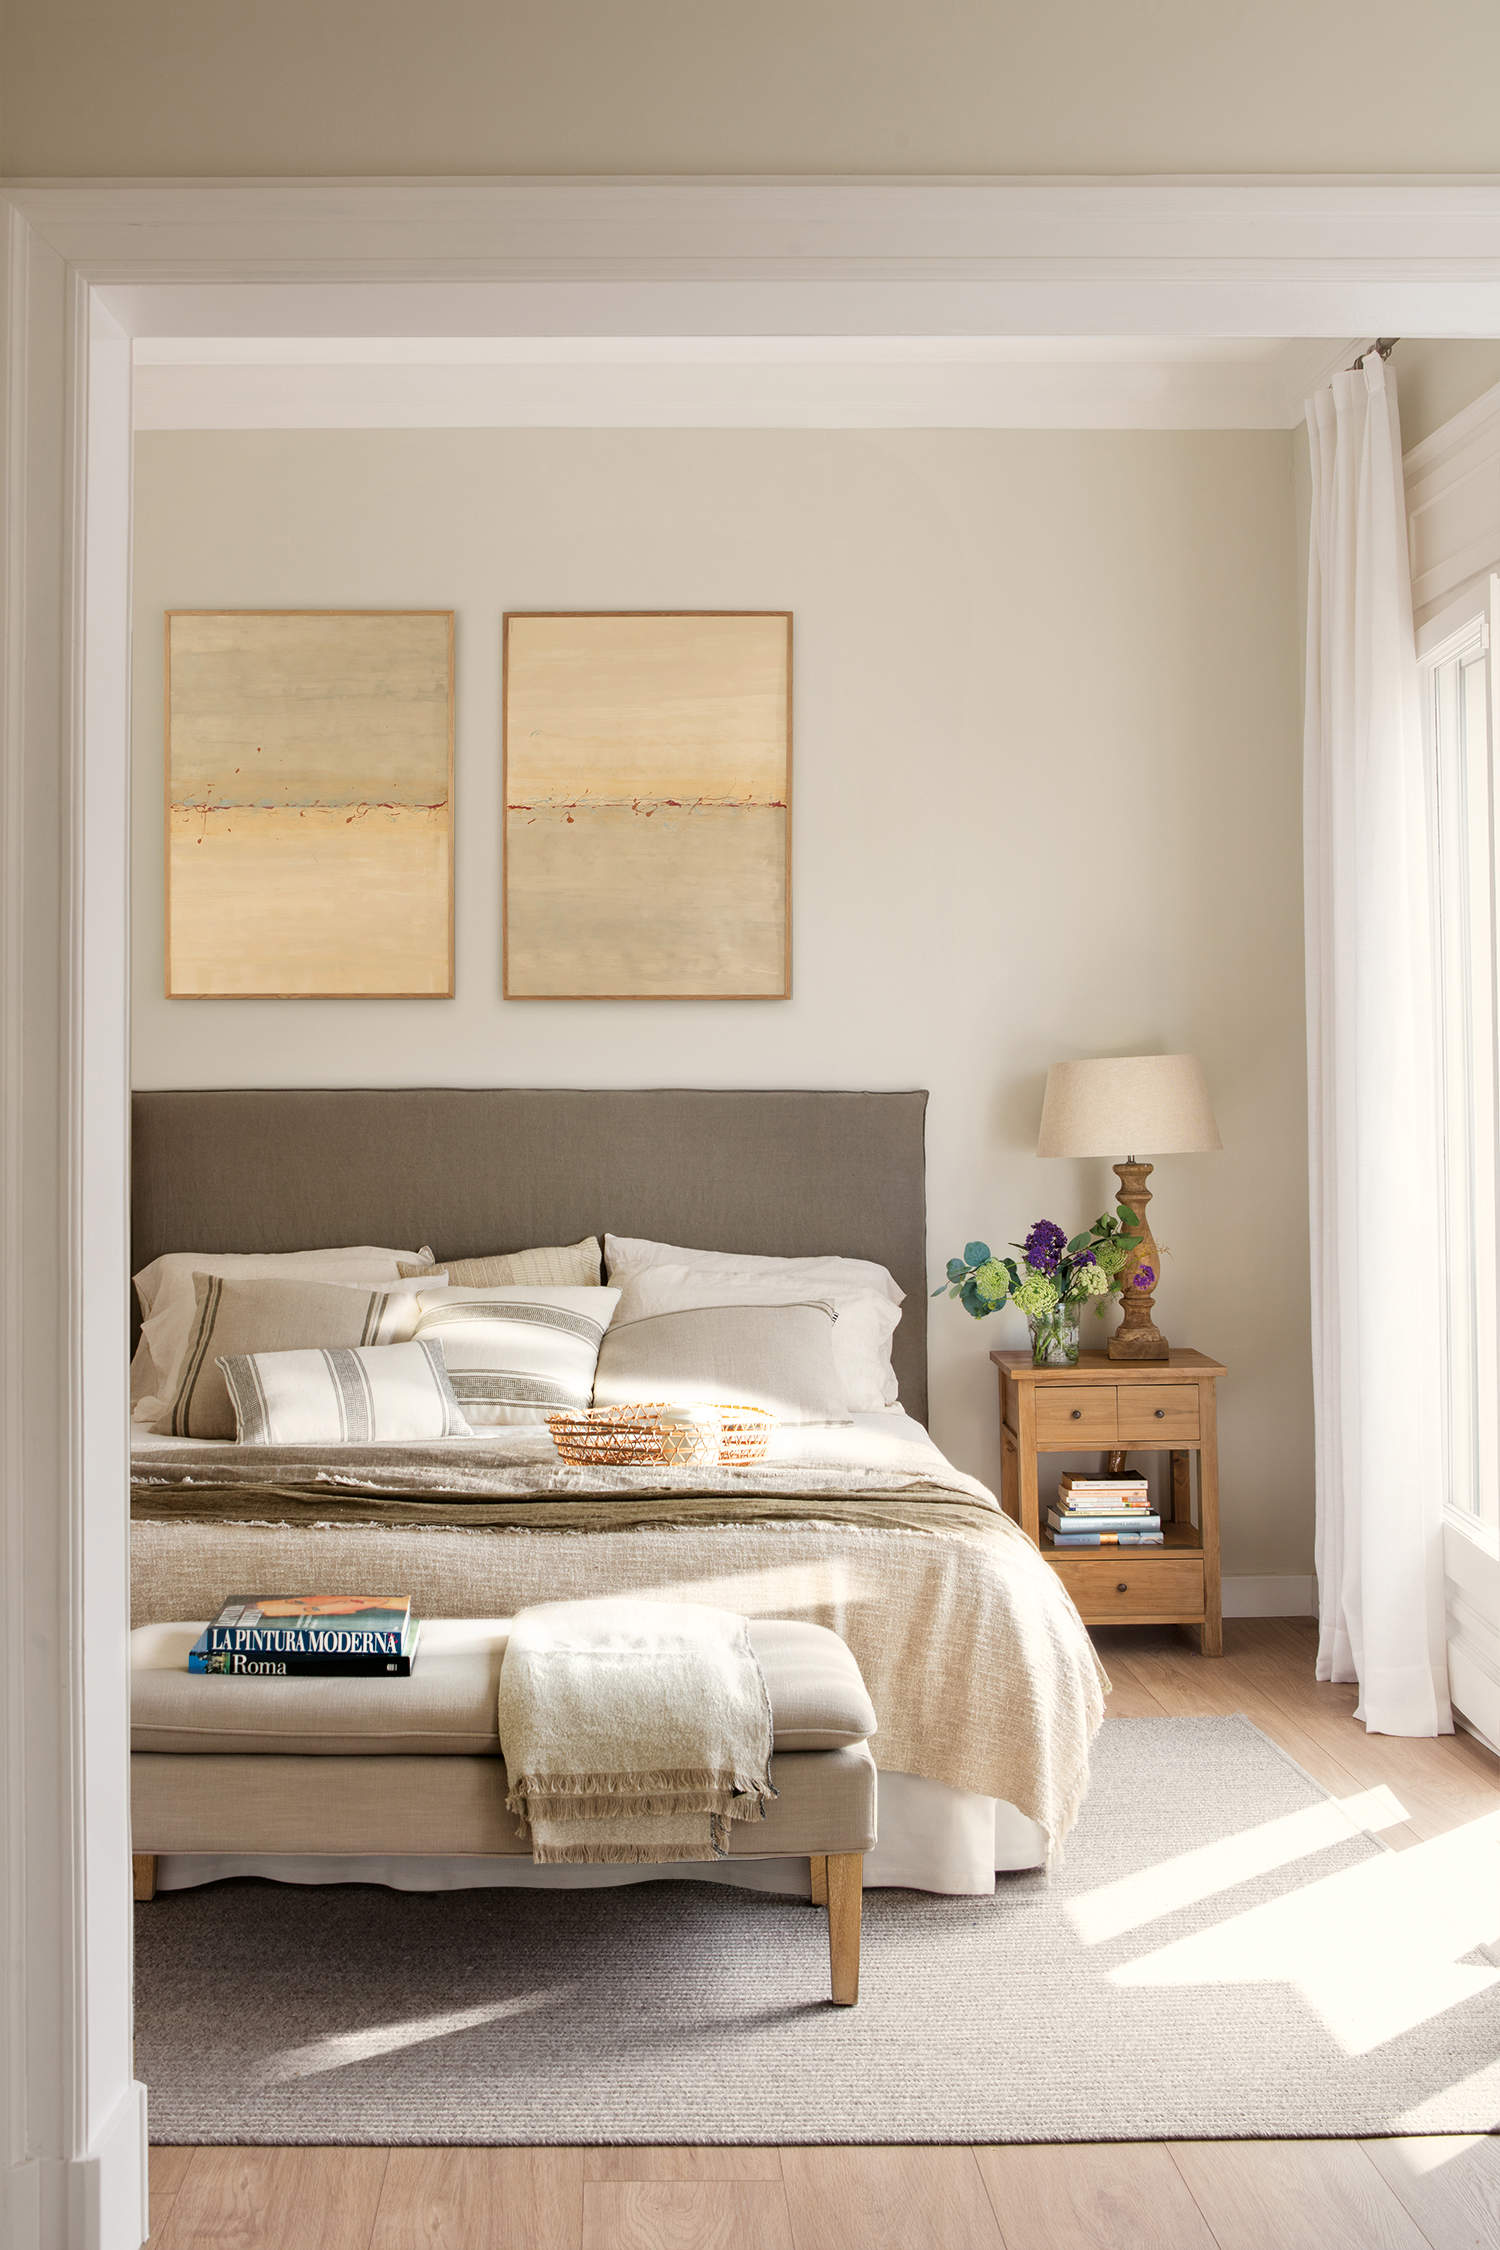 Dormitorio cálido color beige y gris.